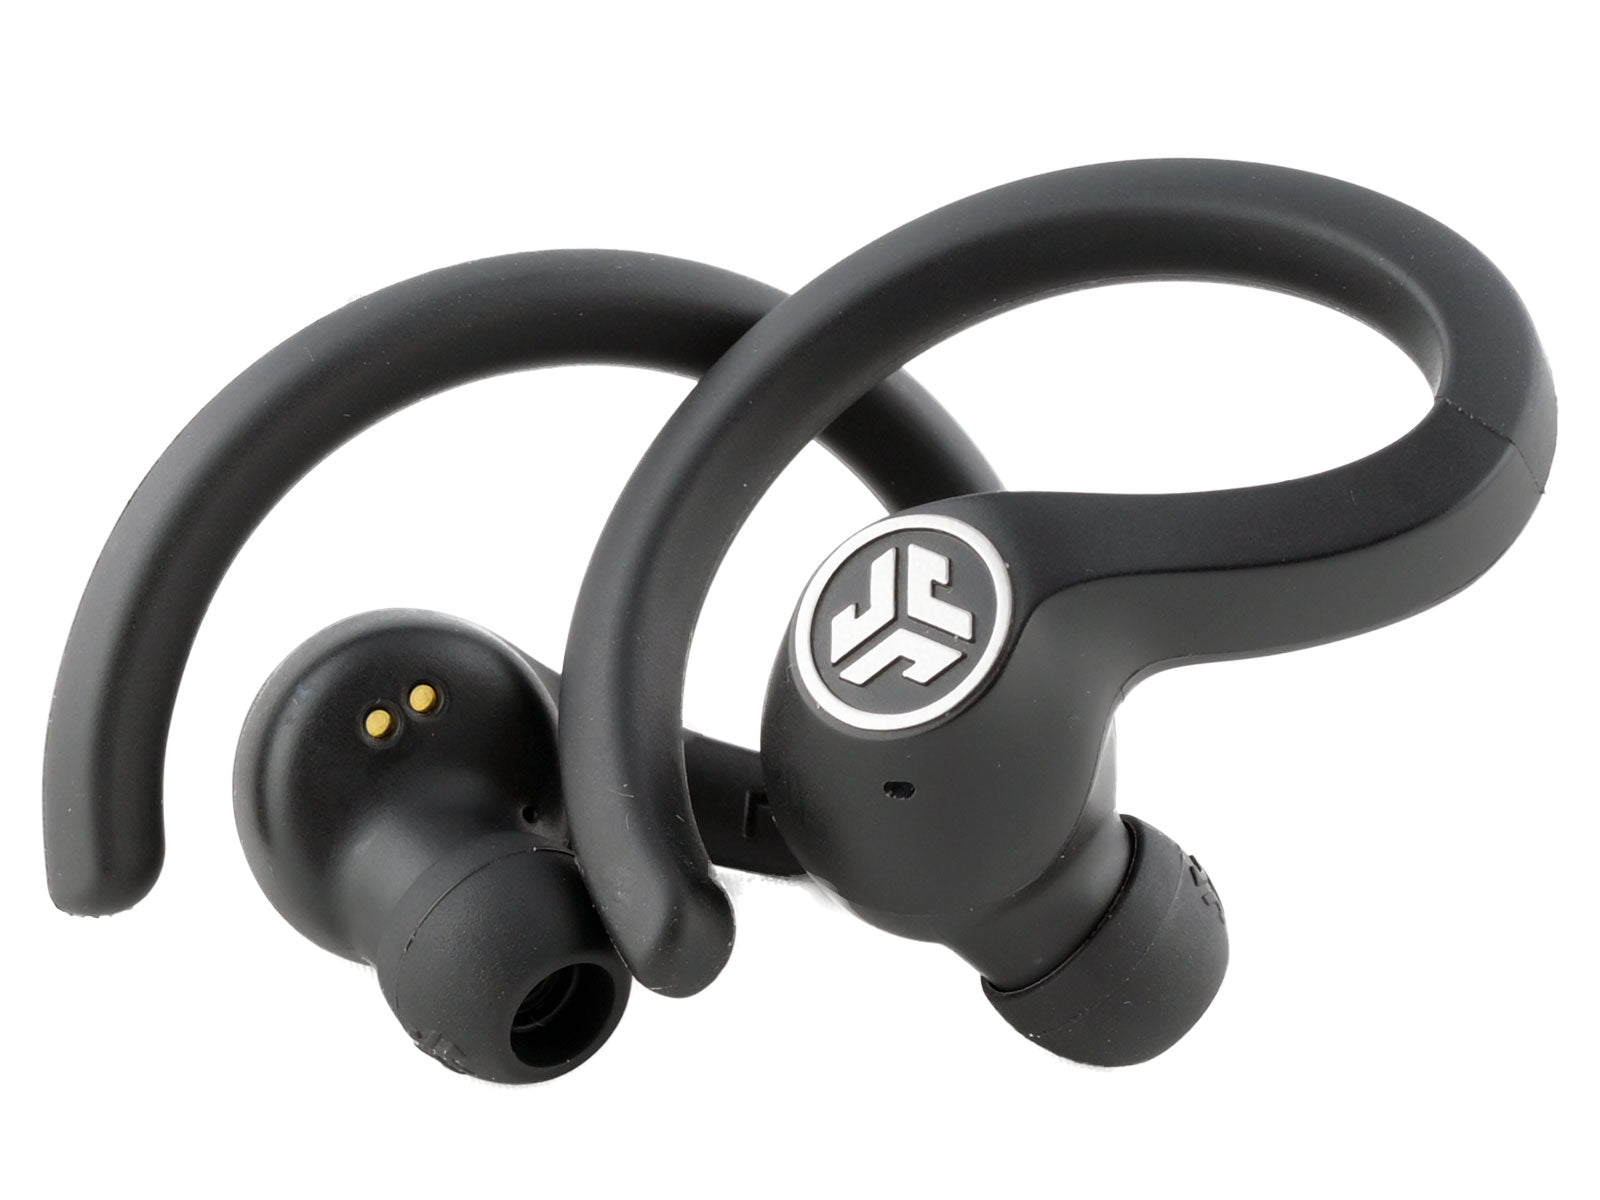  JLab JBuds Air Sport True Wireless Earbuds In-Ear Kopfhörer Schwarze Bluetooth-Ohrhörer mit Ohrbügeln und In-Ear-Kopfhörern auf weißem Hintergrund mit einem Logo in der Mitte jedes Ohrstöpsels.